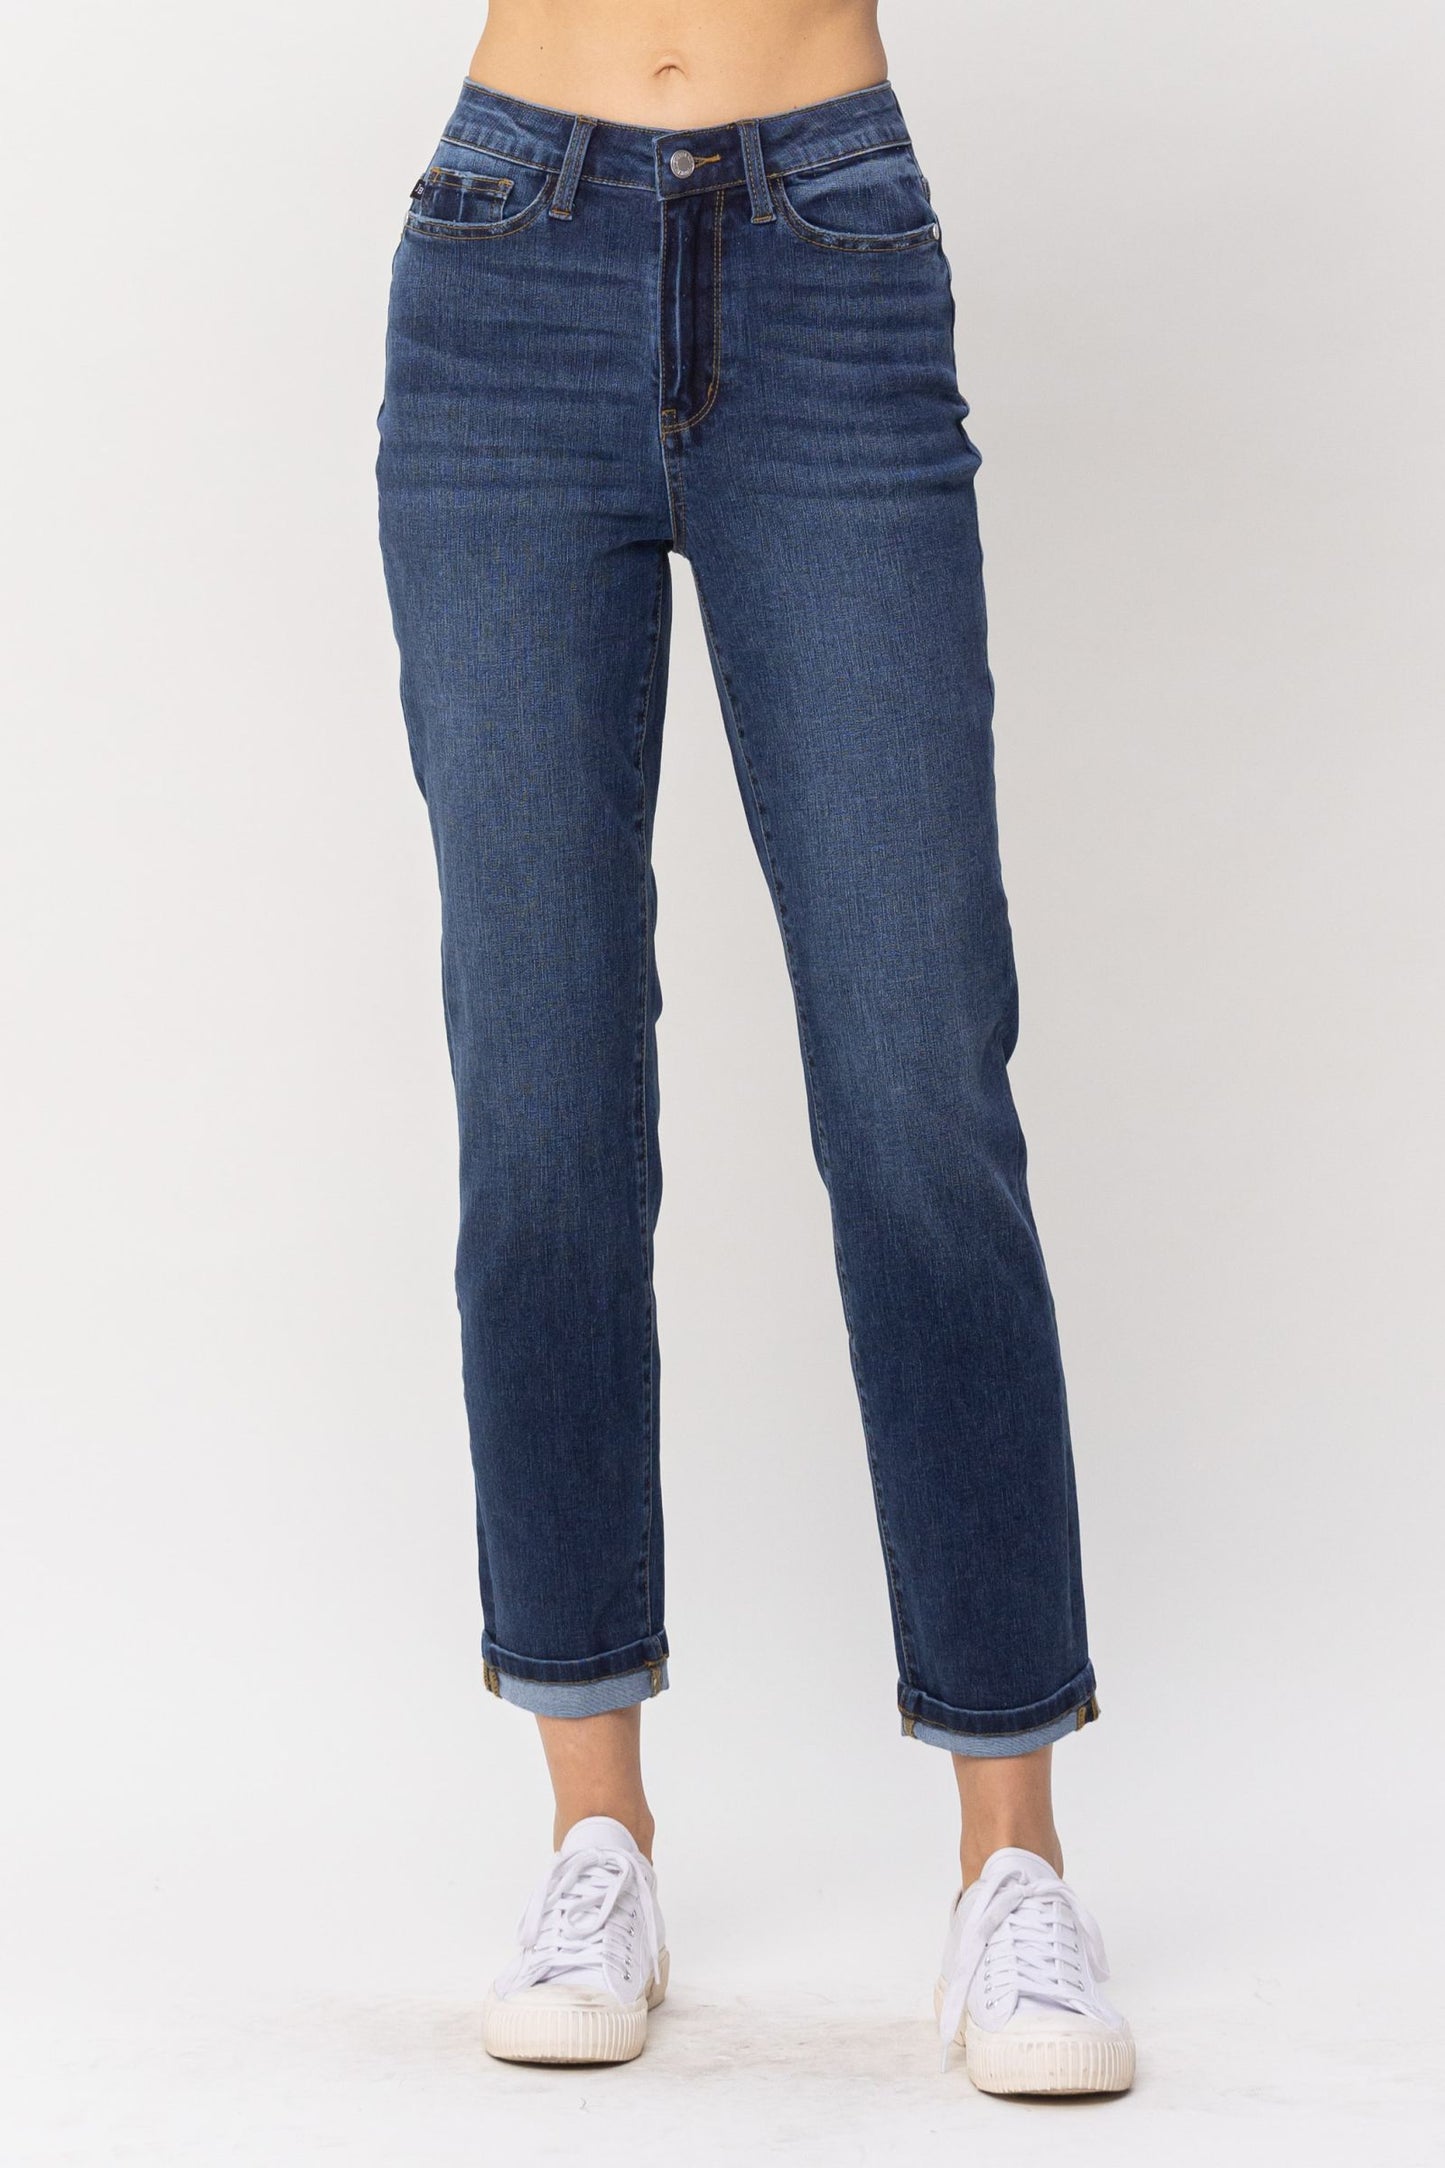 Judy Blue High Waist Cool Denim Jeans